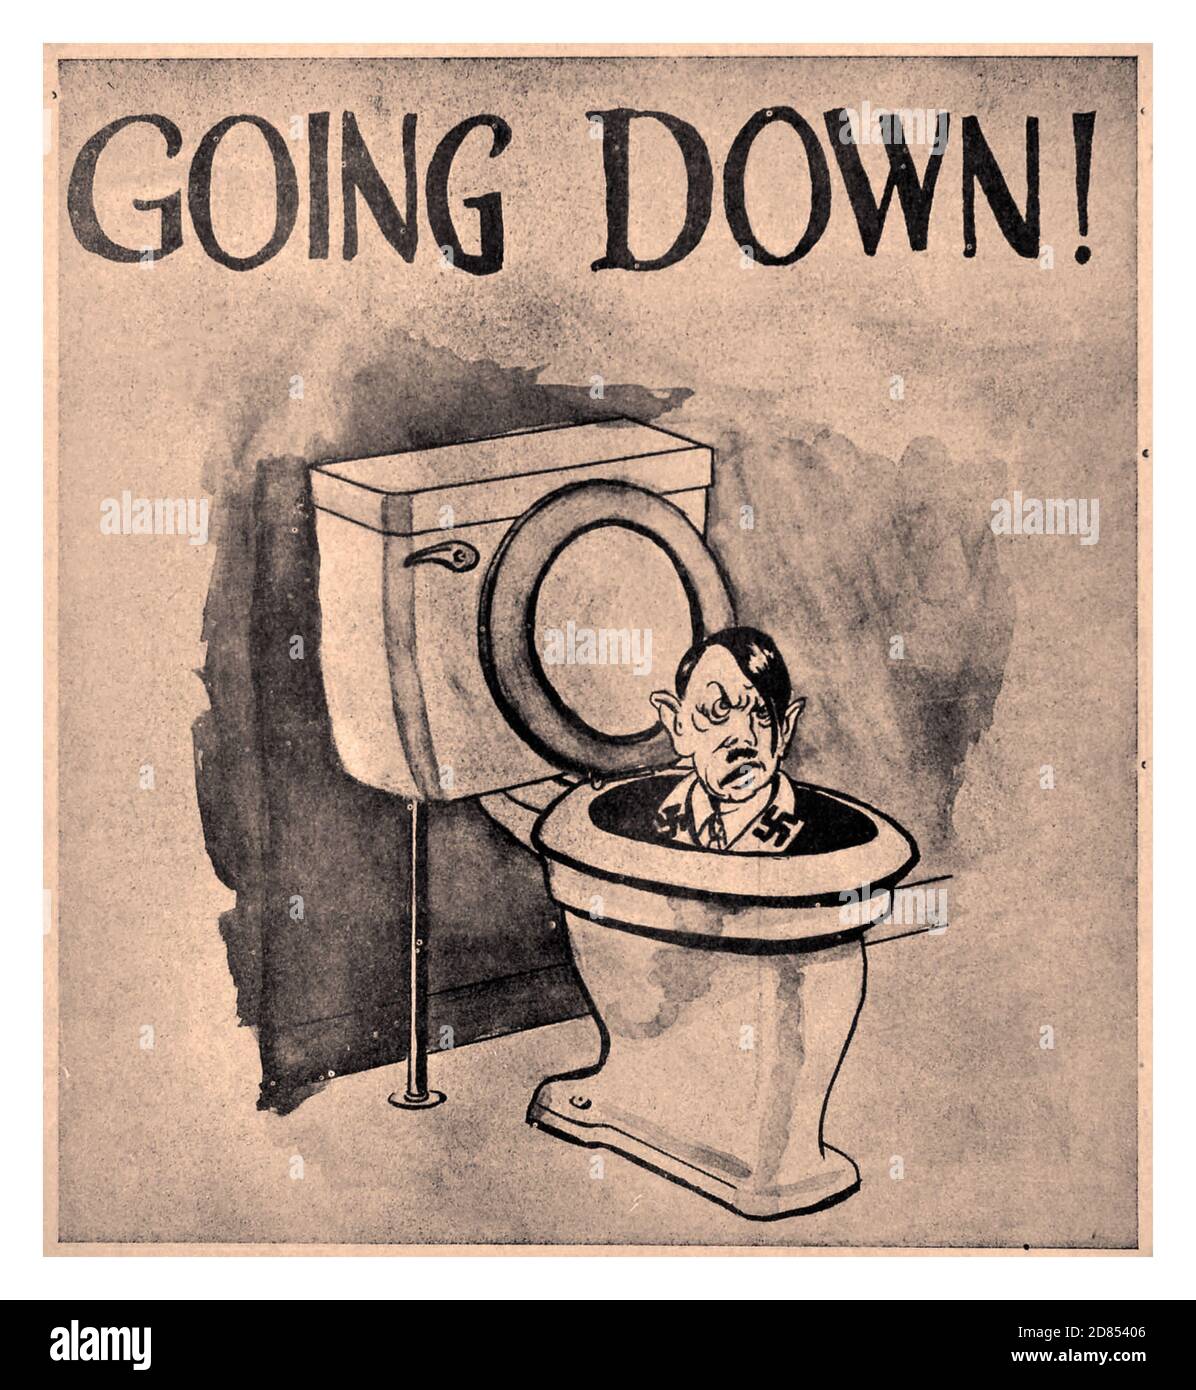 WW2 War HITLER affiche de dessin animé «Going Down» avec Adolf Hitler descendant dans une toilette portant un symbole de svastika. Affiche de propagande vintage intitulée « Going Down! », représentant un dessin en noir et blanc de la caricature d'Adolf Hitler coulant sur un siège de toilette. L'affiche a été publiée par Hobo news, un journal du début du 20e siècle pour les travailleurs migrants sans abri. Il a été publié à St. Louis, Missouri, et Cincinnati par l'International Brotherhood Association (IBWA) et son fondateur James EADS How. : USA, designer : Hobo News, année d'impression : années 1940 Banque D'Images